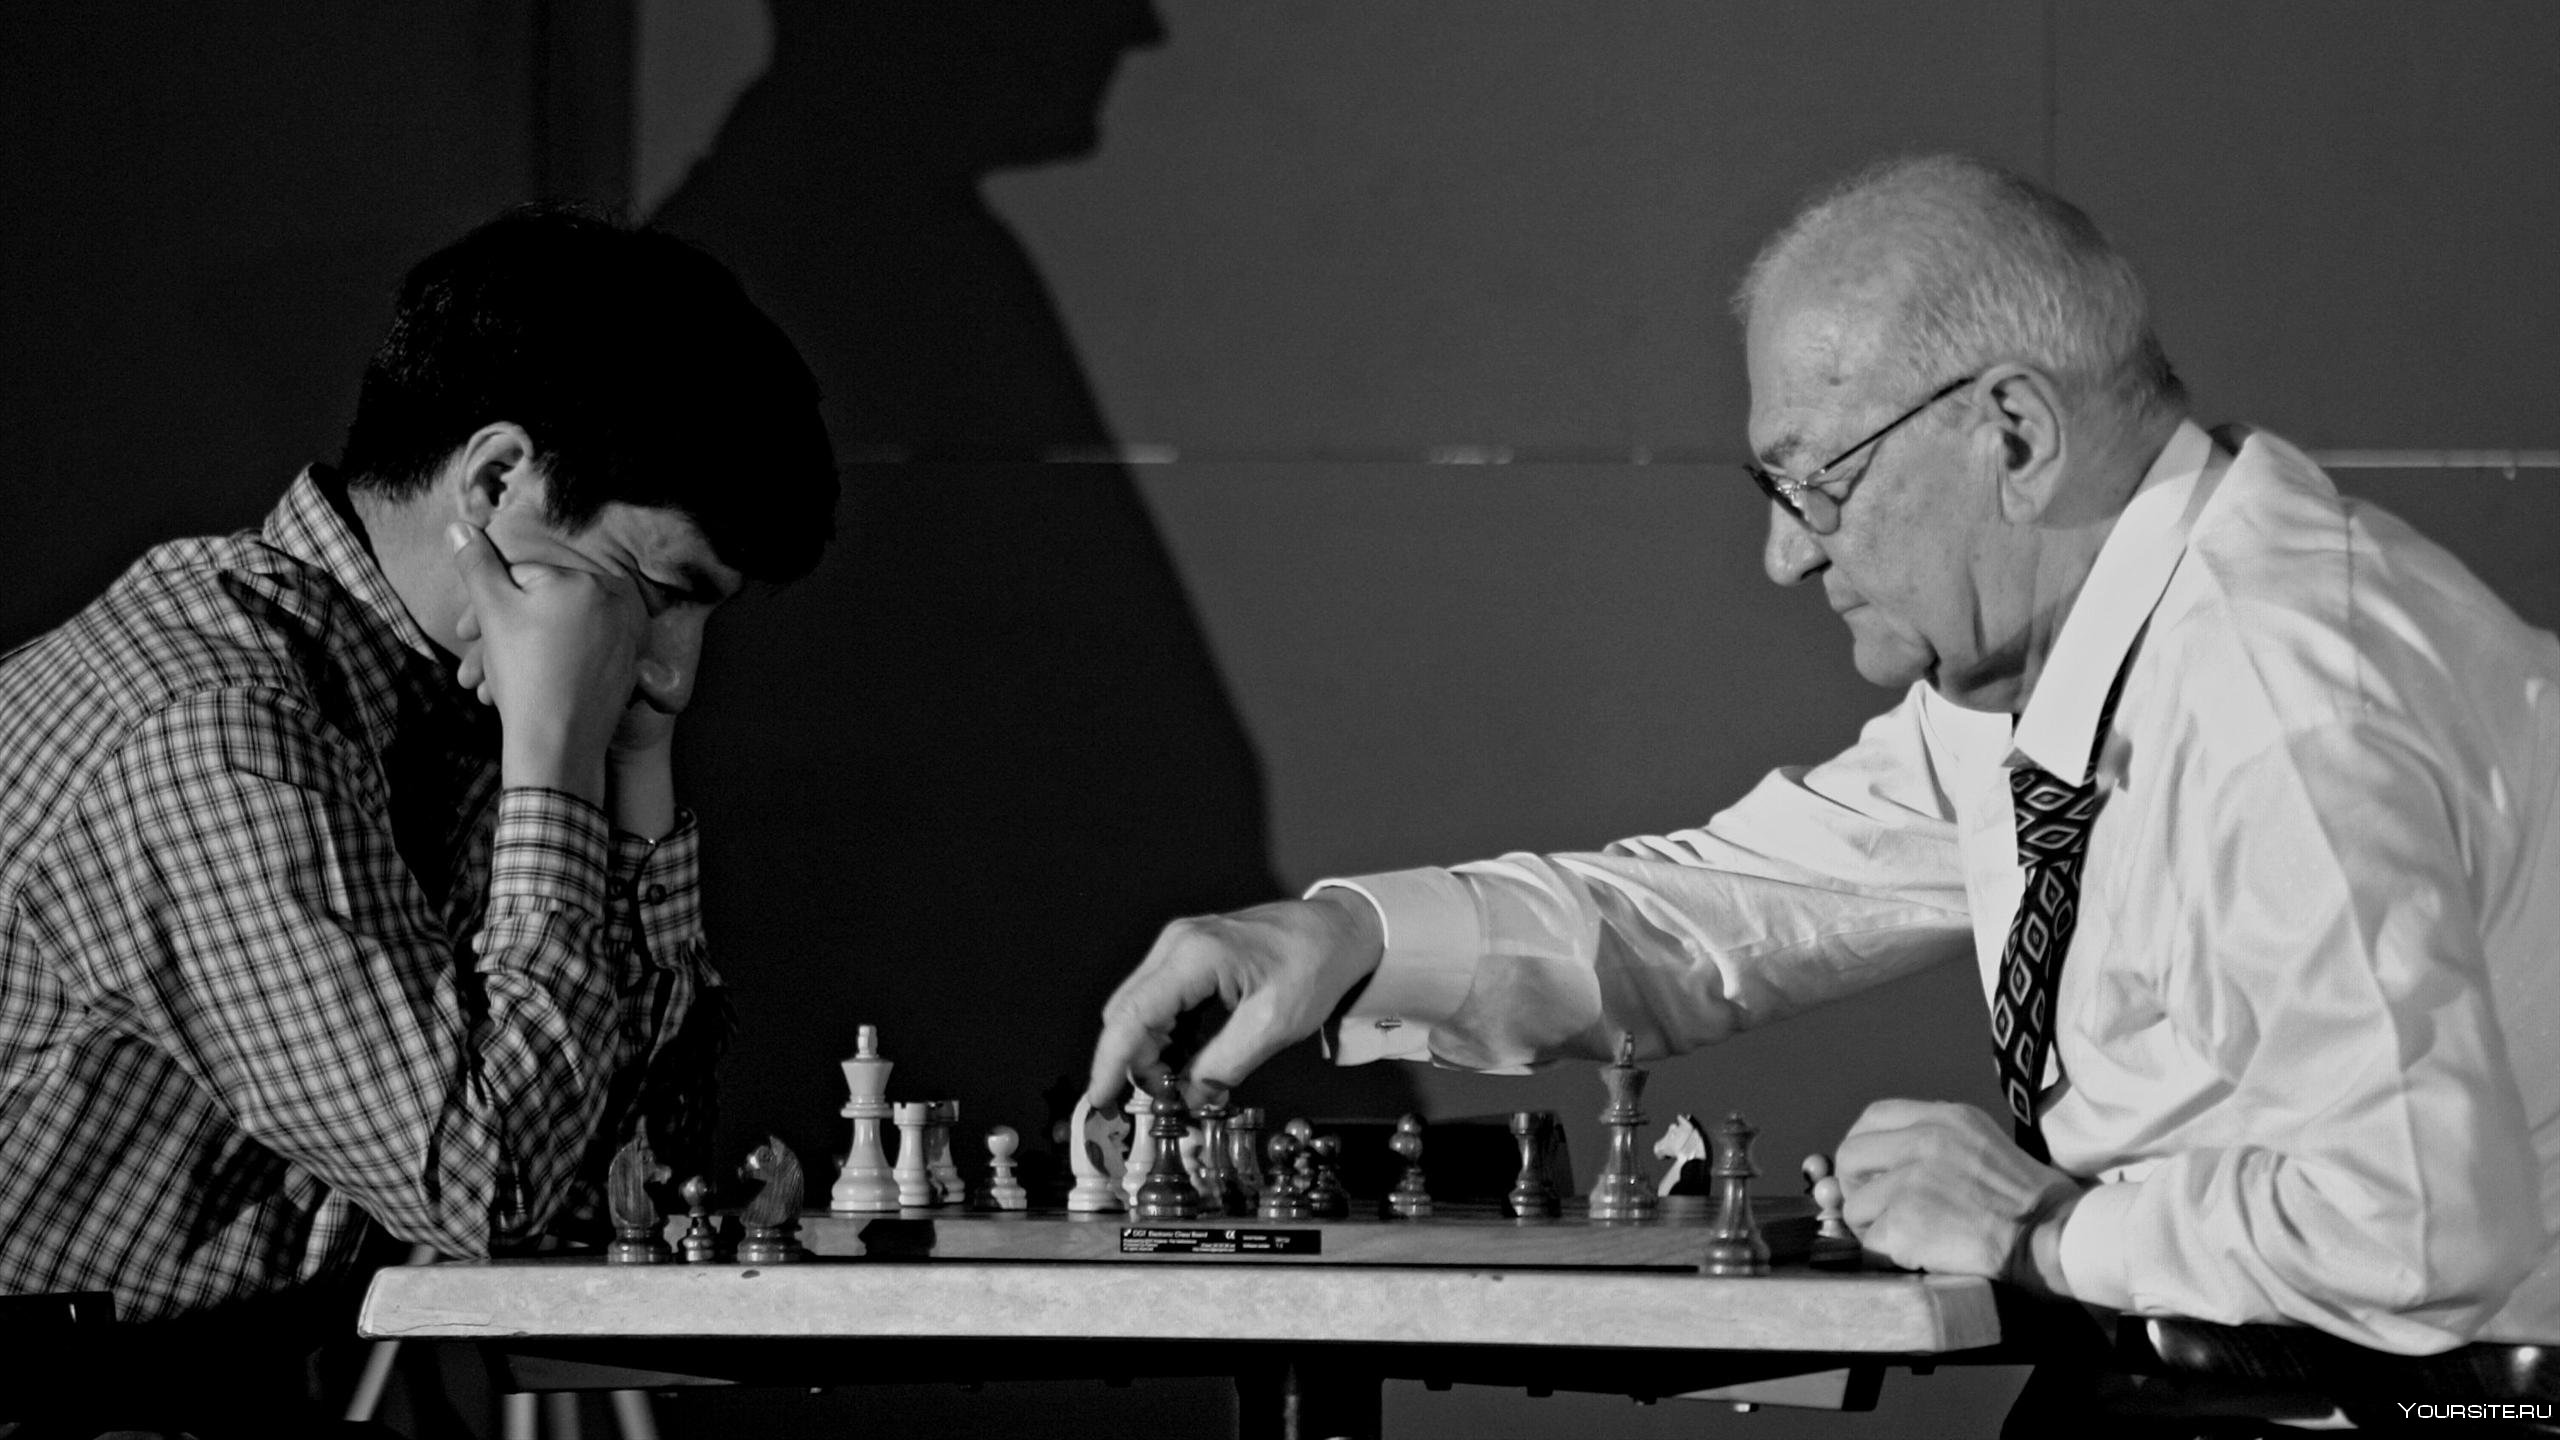 Корчной шахматист и карпов